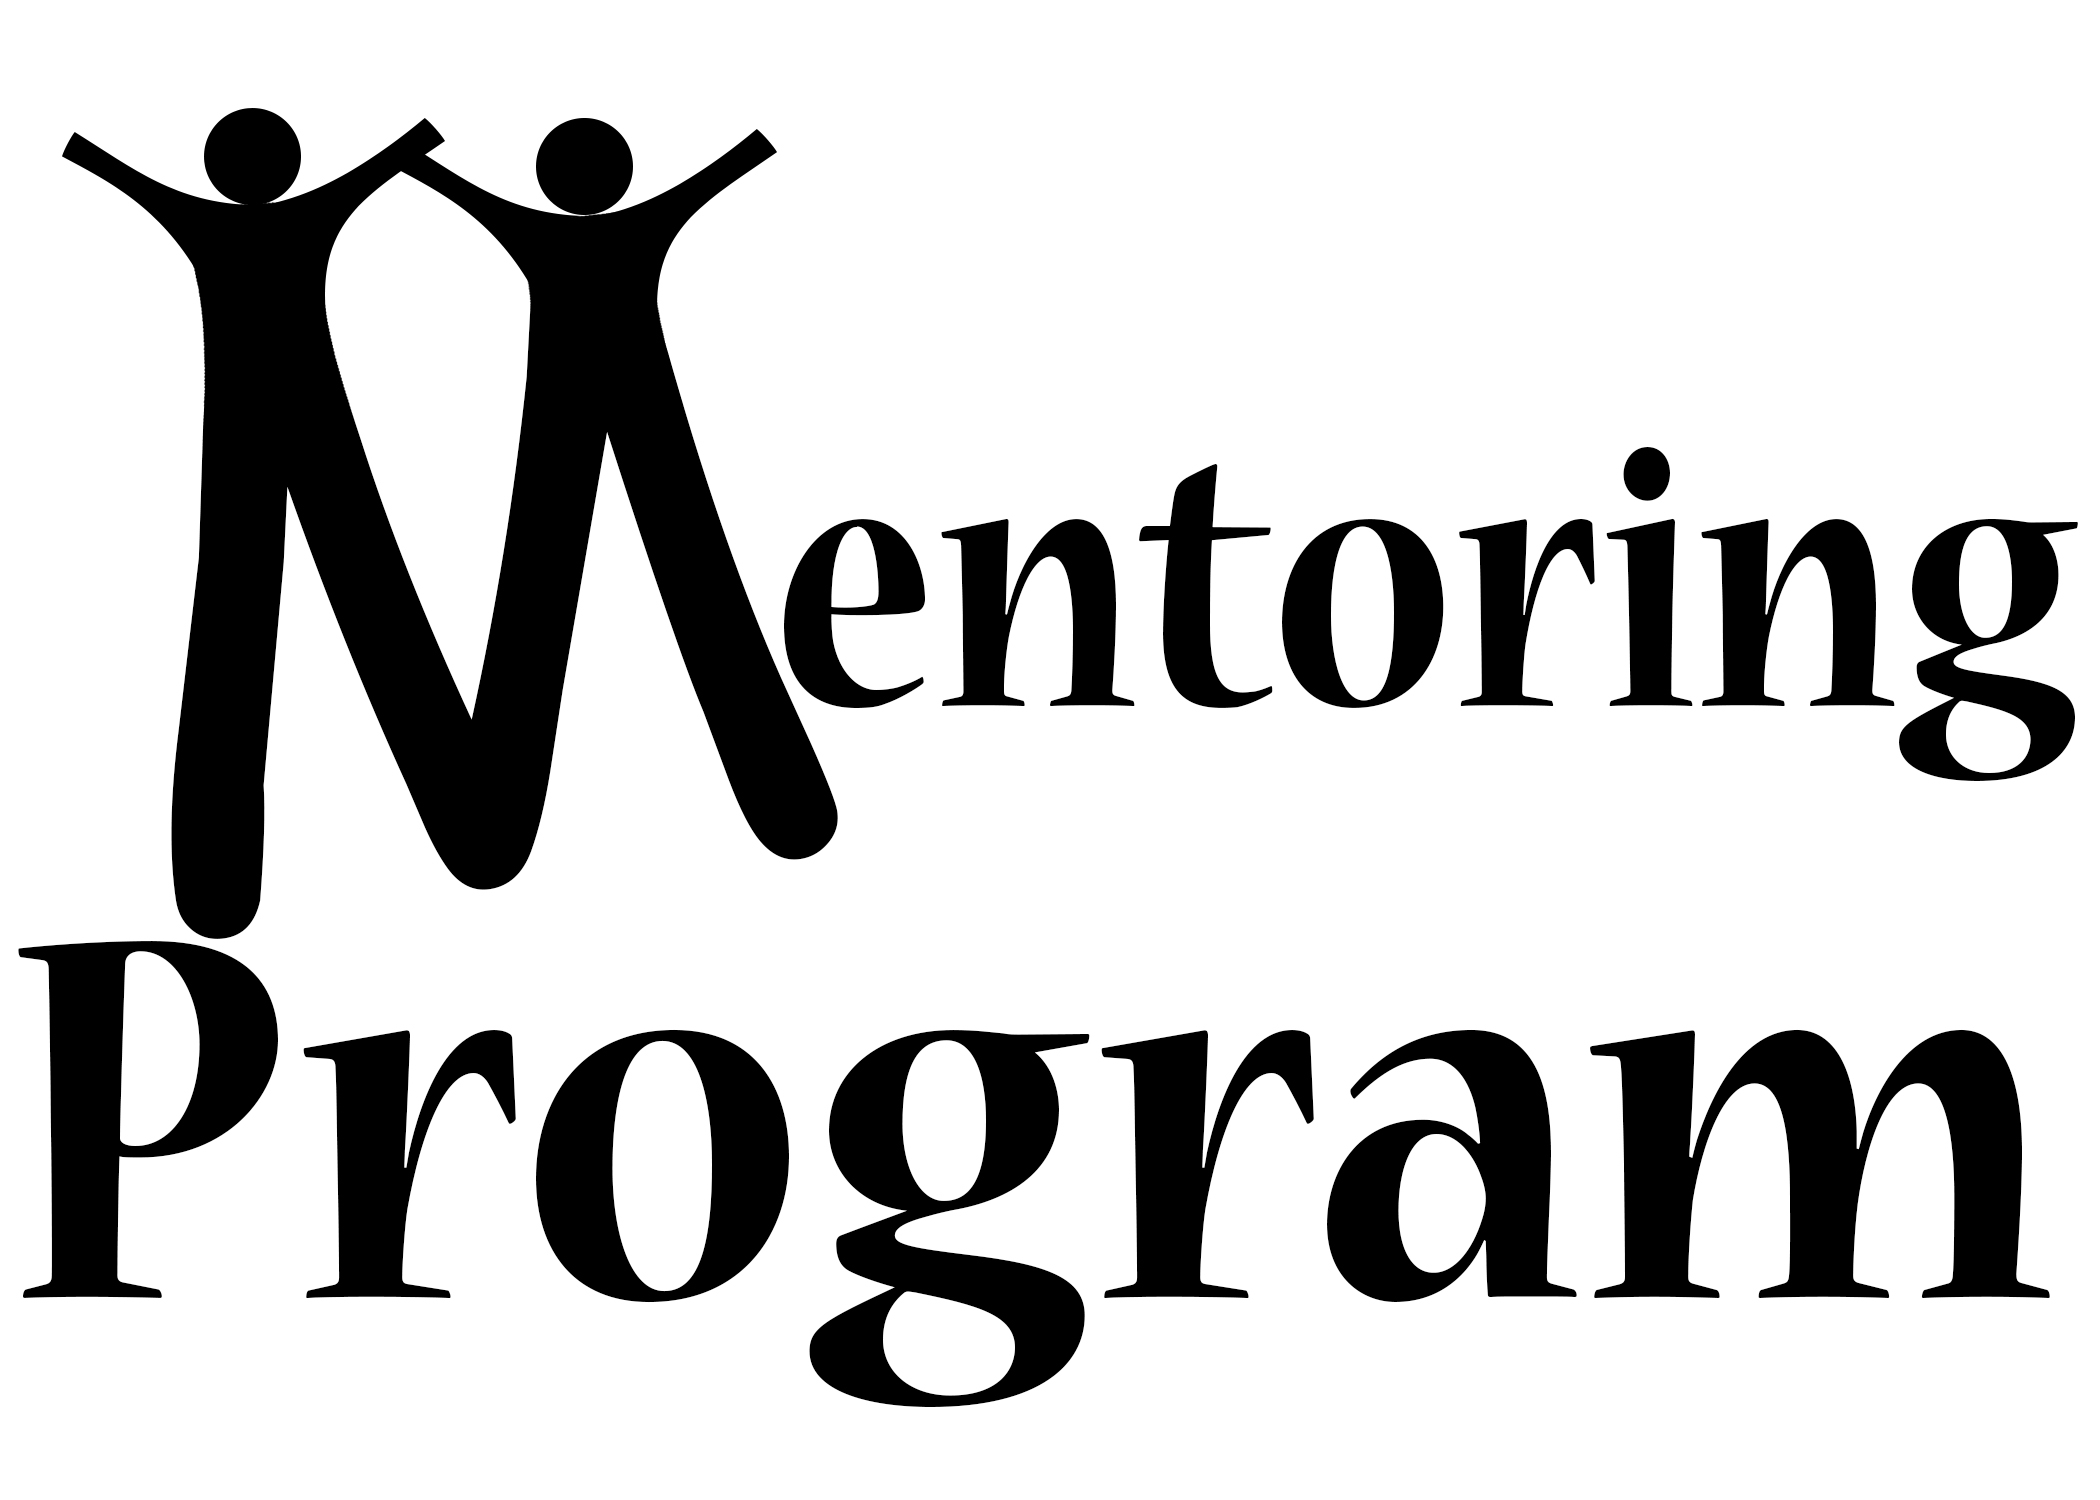 Executive Mentoring Programs